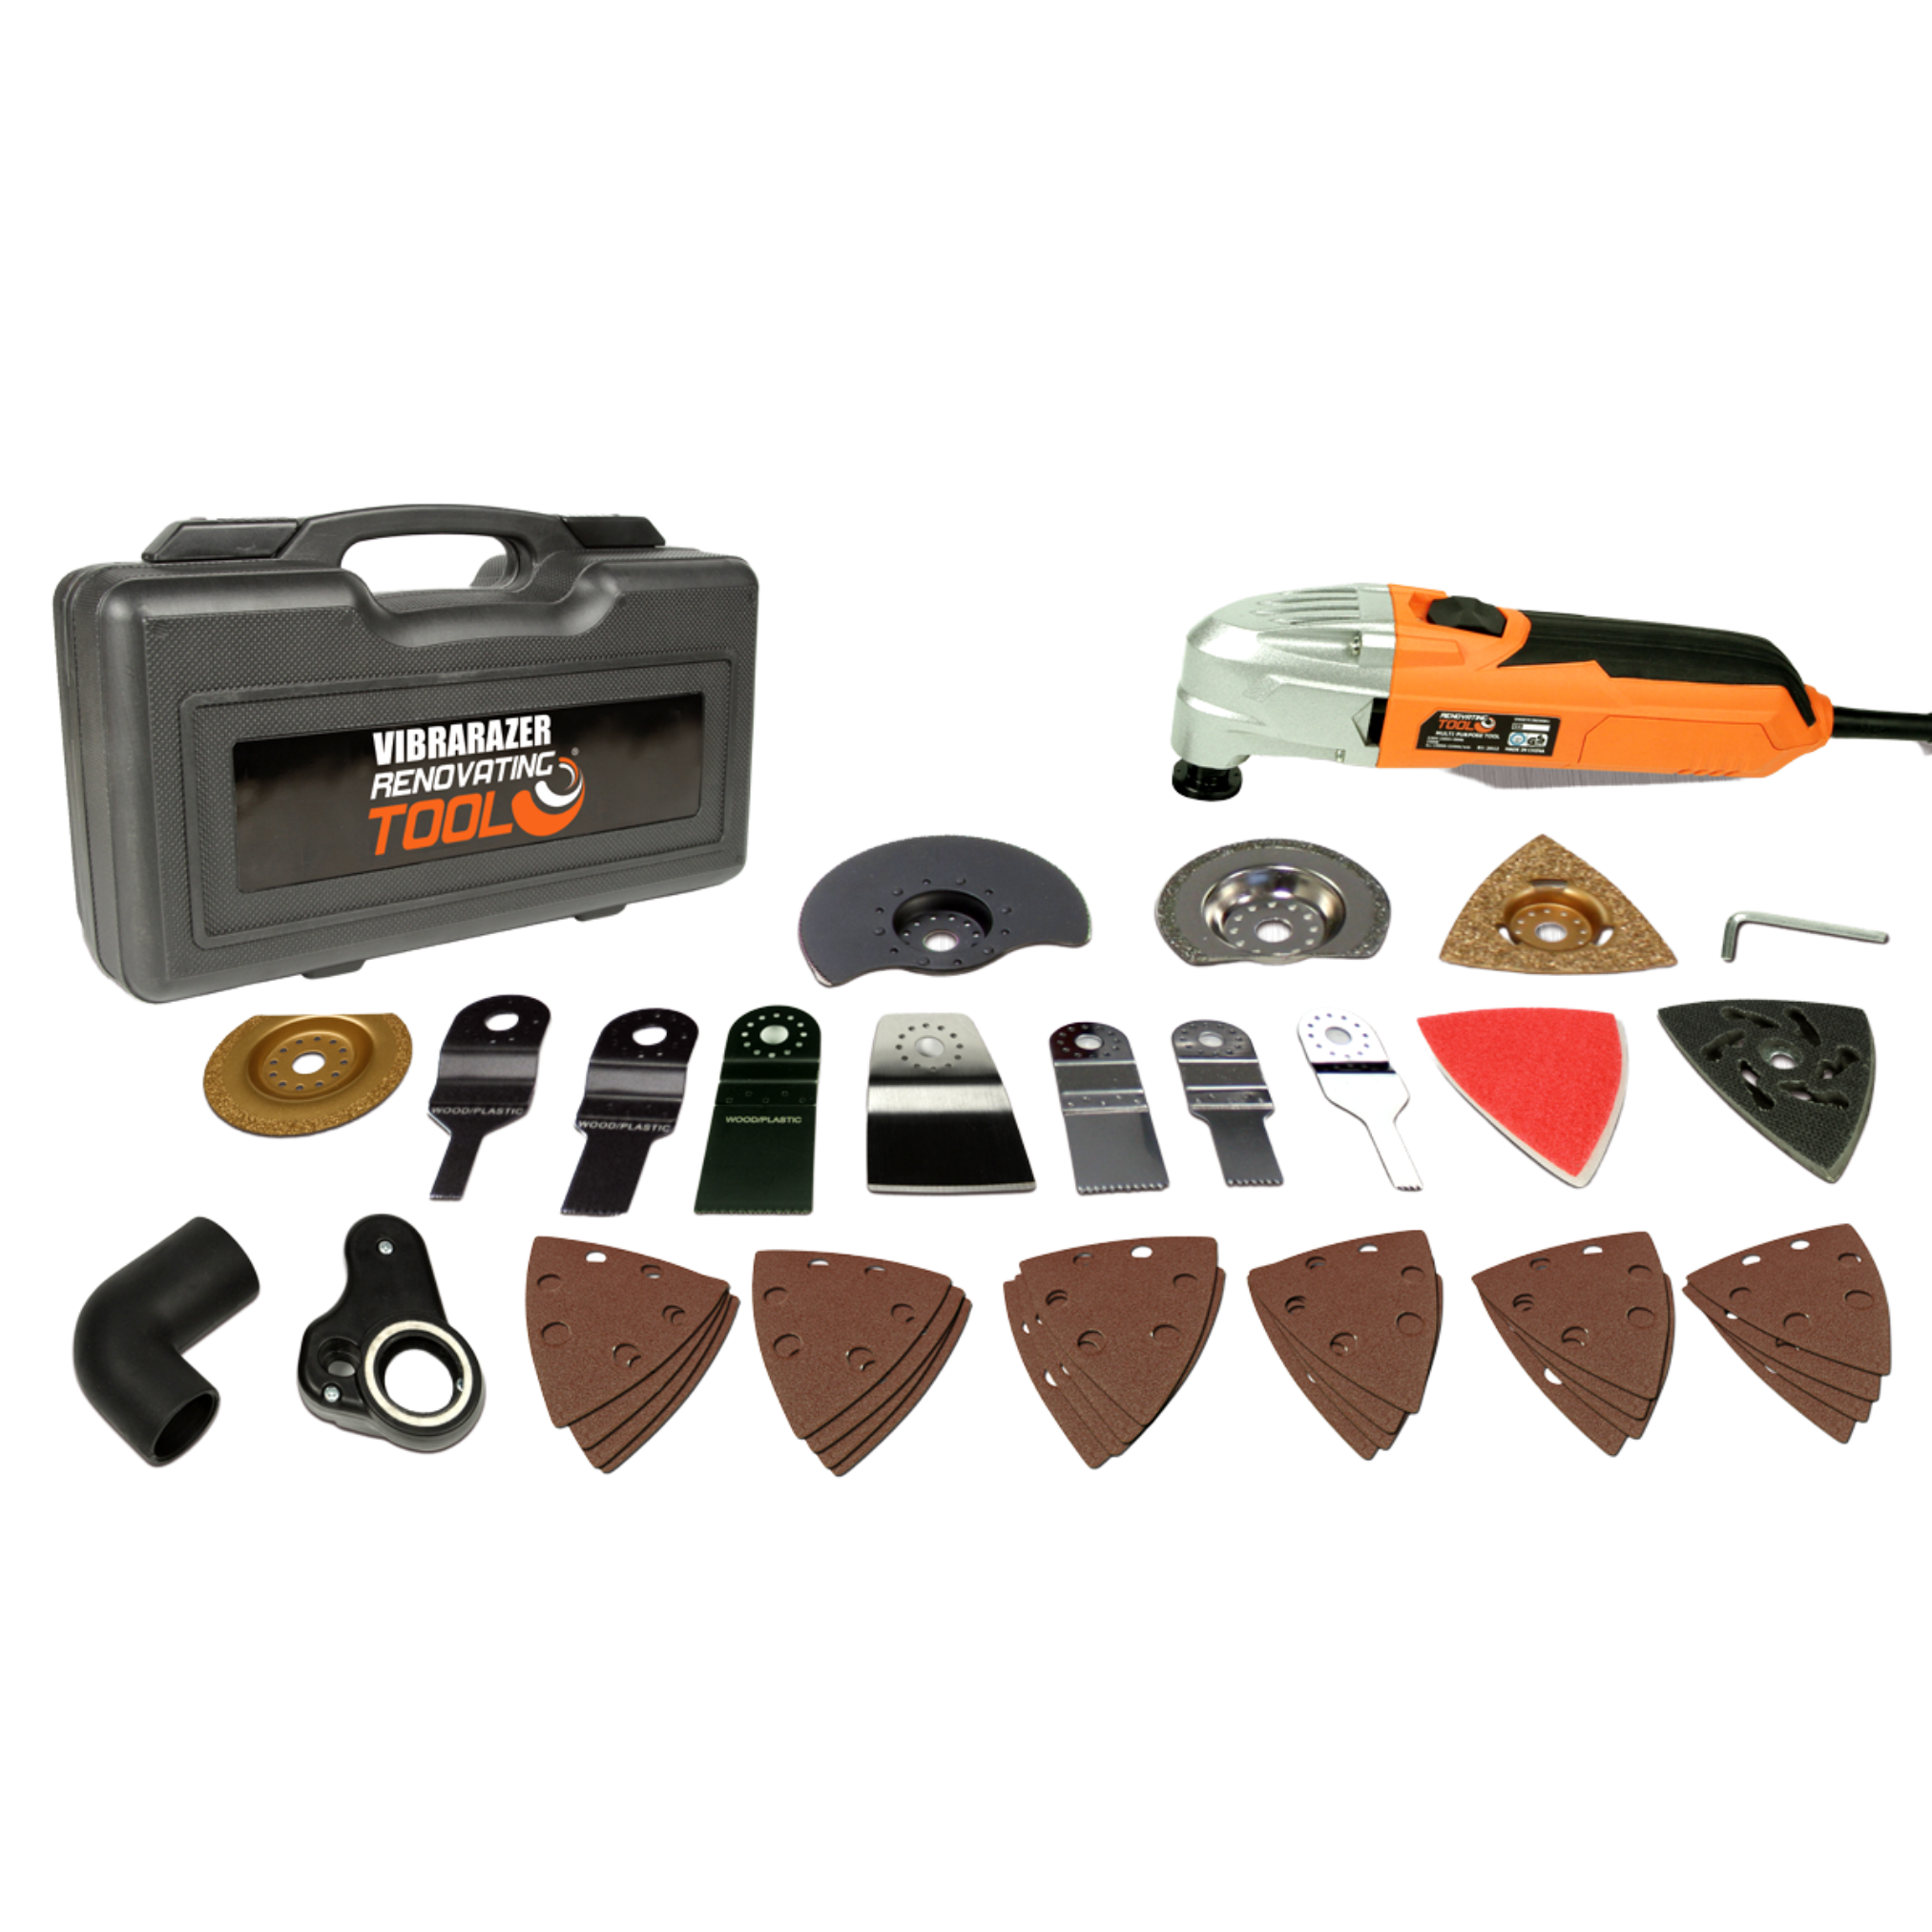 40 Vibrarazer mit orange Zubehörteilen Multifunktionswerkzeug, Pro INDUSTEX - Renovating Tool® Plus Series